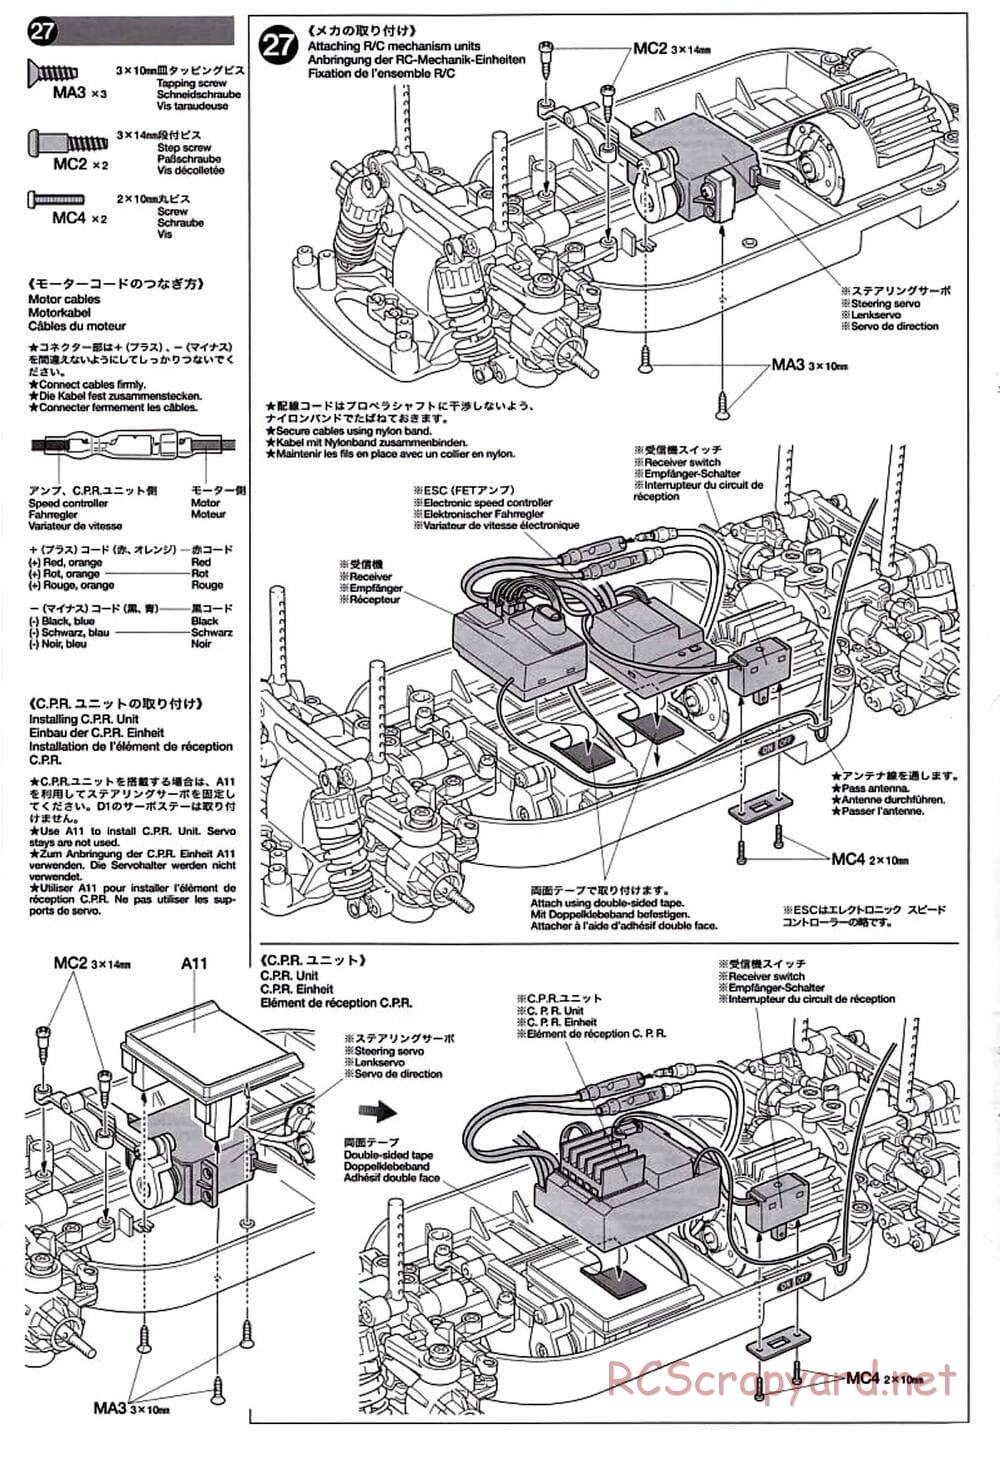 Tamiya - TT-01D Chassis - Manual - Page 14